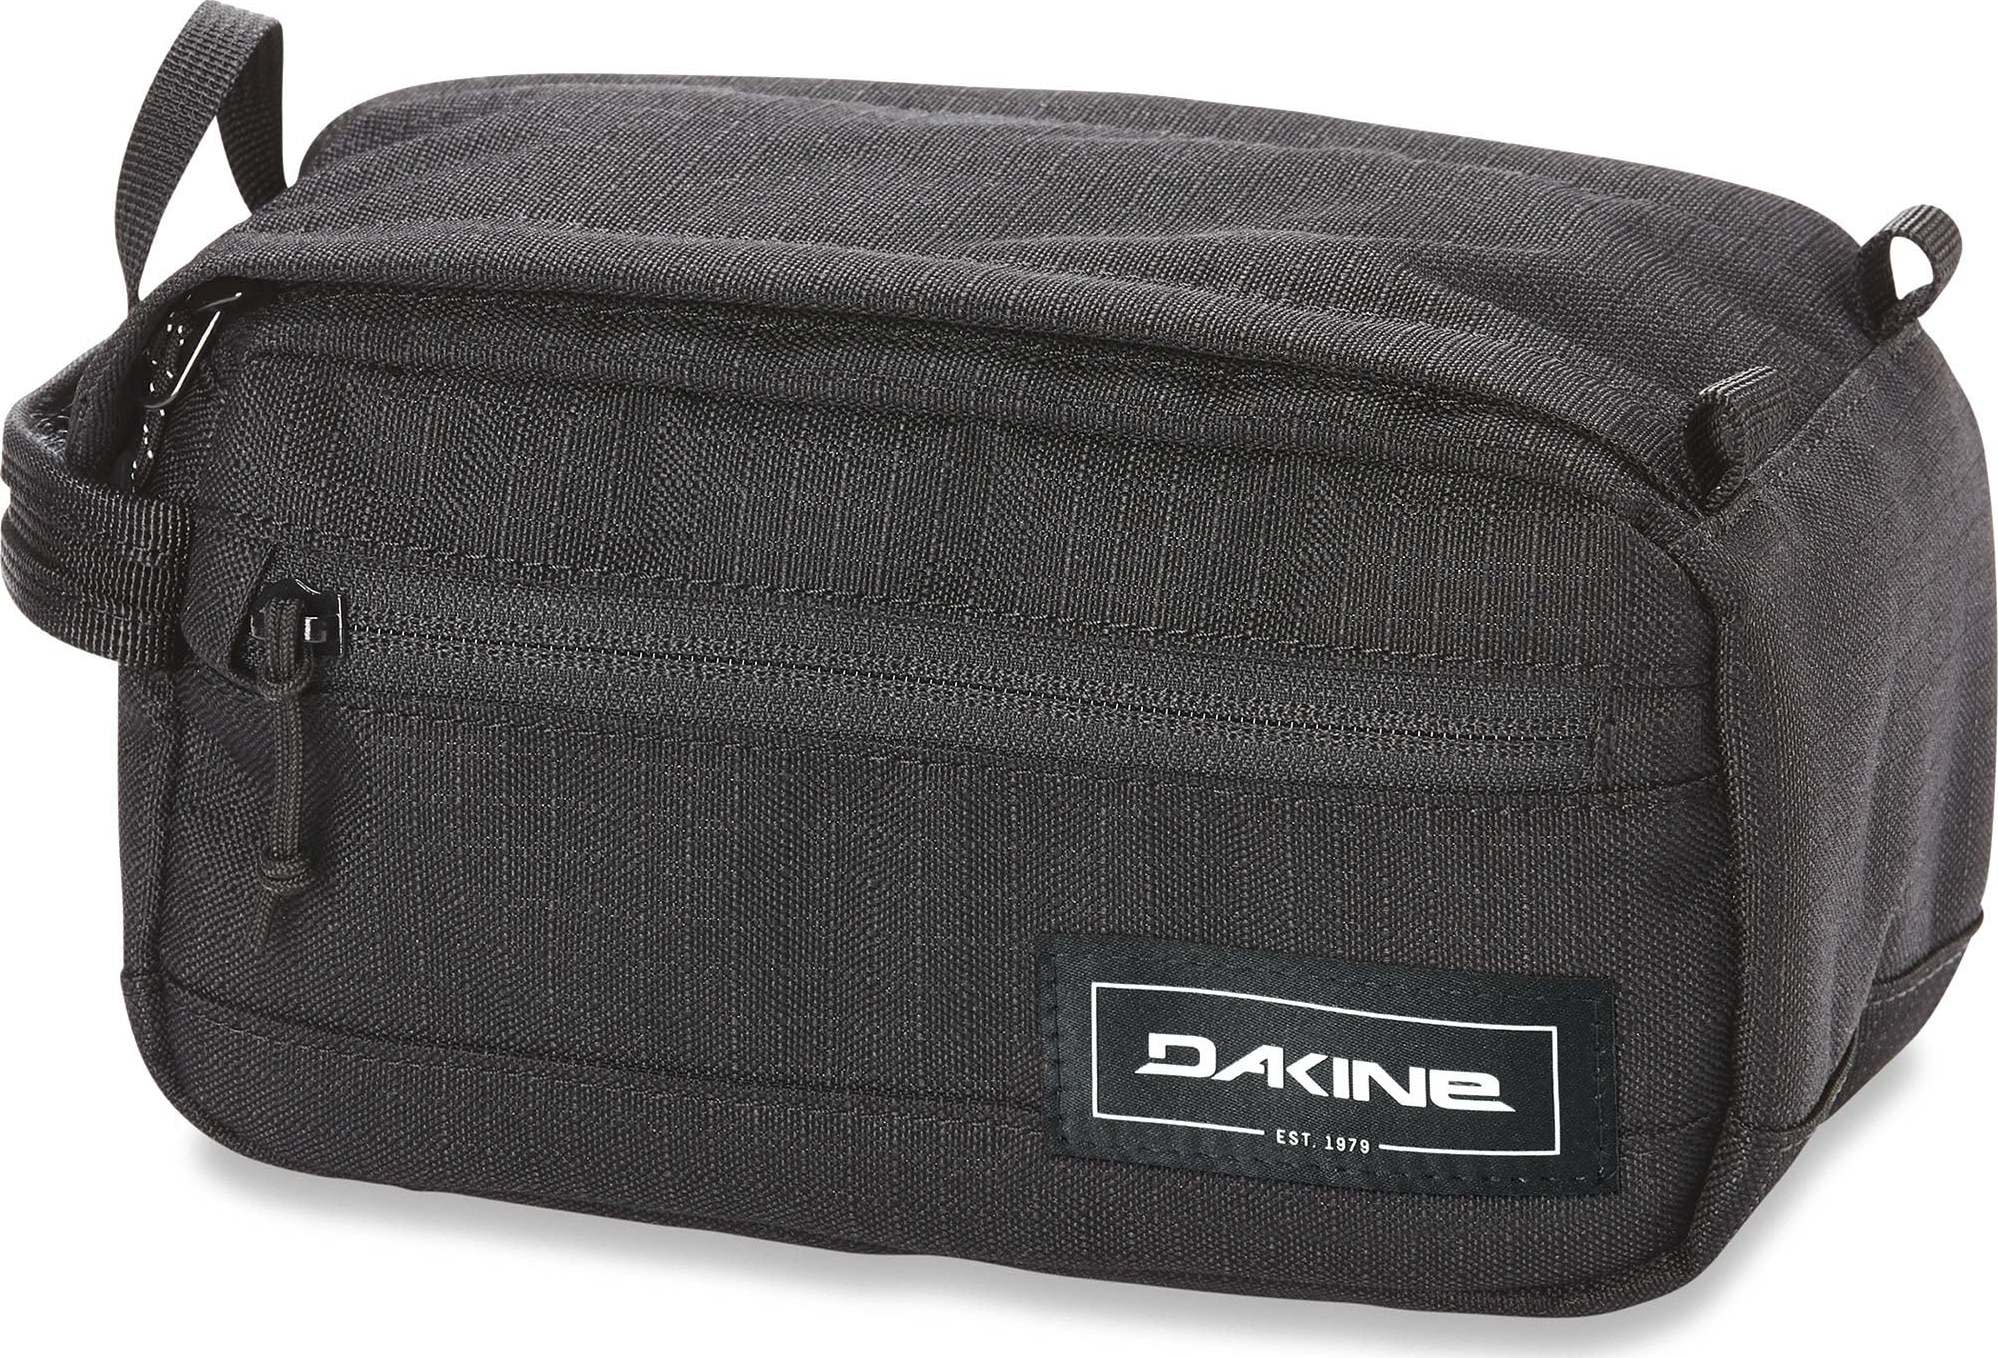 Dakine Groomer Medium Travel Kit Black